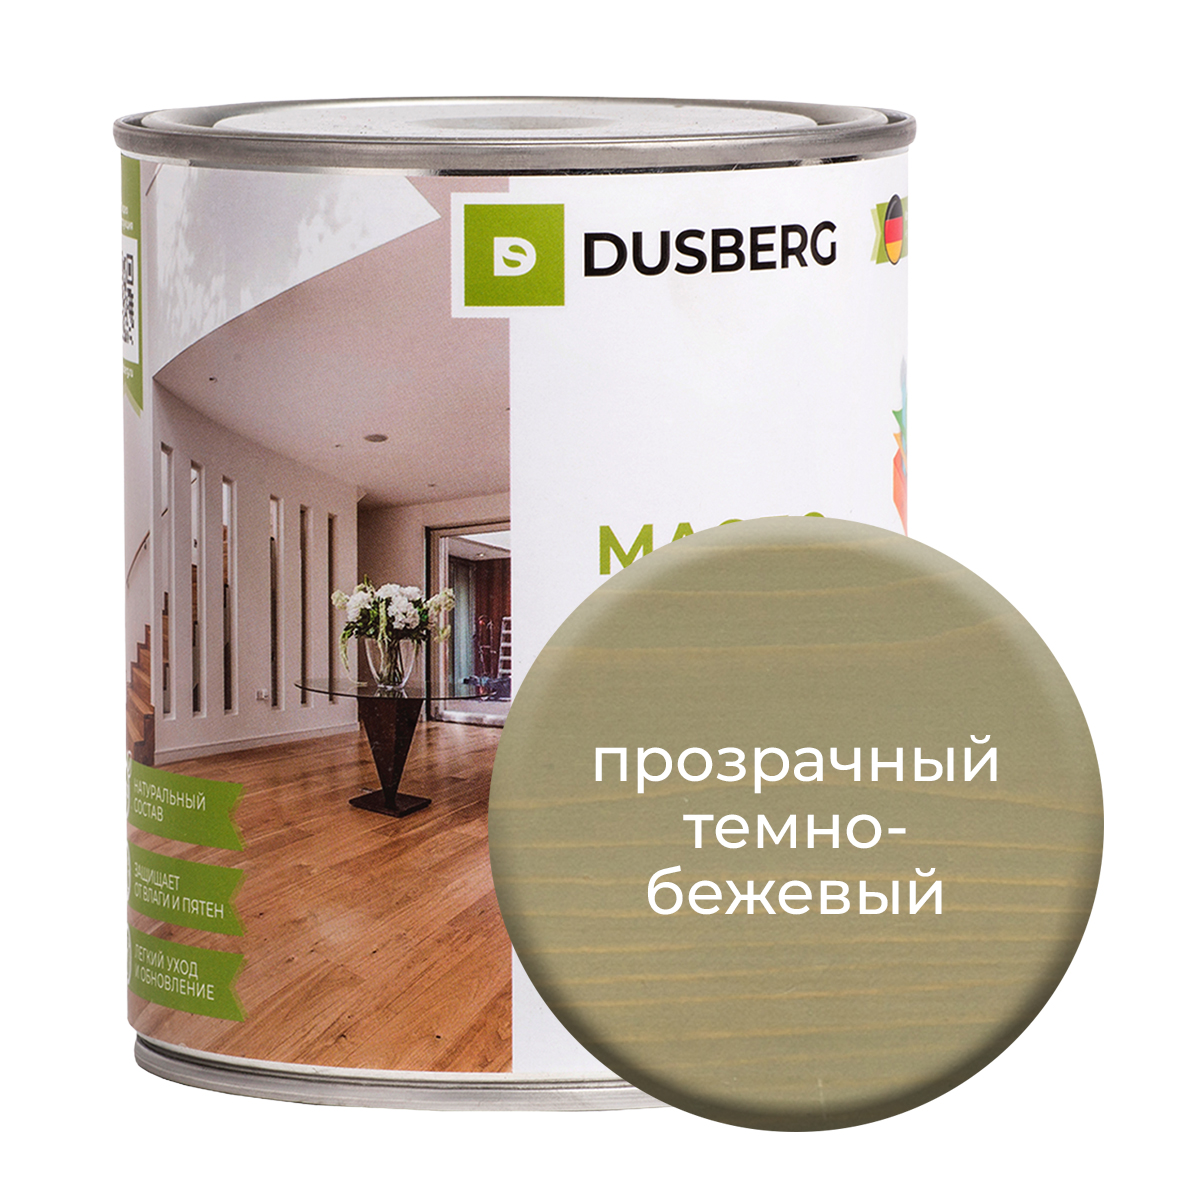 Масло Dusberg для стен на бесцветной основе, 750 мл Прозрачный темно-бежевый масло dusberg для дерева на бесцветной основе 750 мл голдохор